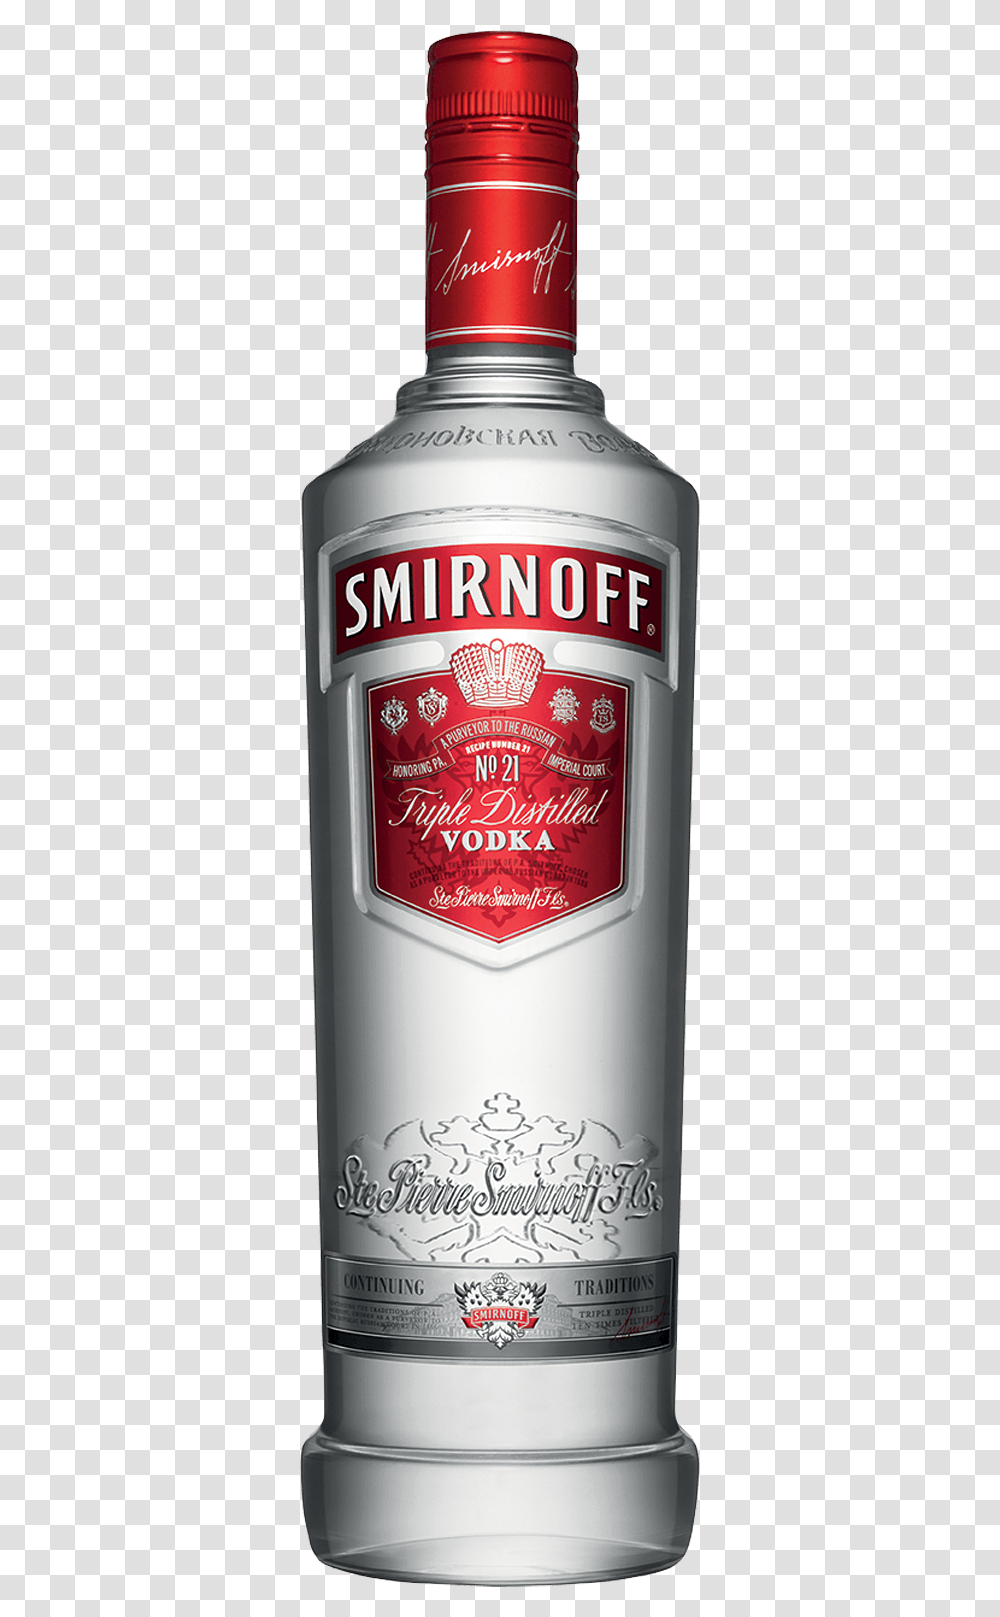 Smirnoff Recipe 21 Vodka Smirnoff Red Label, Alcohol, Beverage, Drink ...